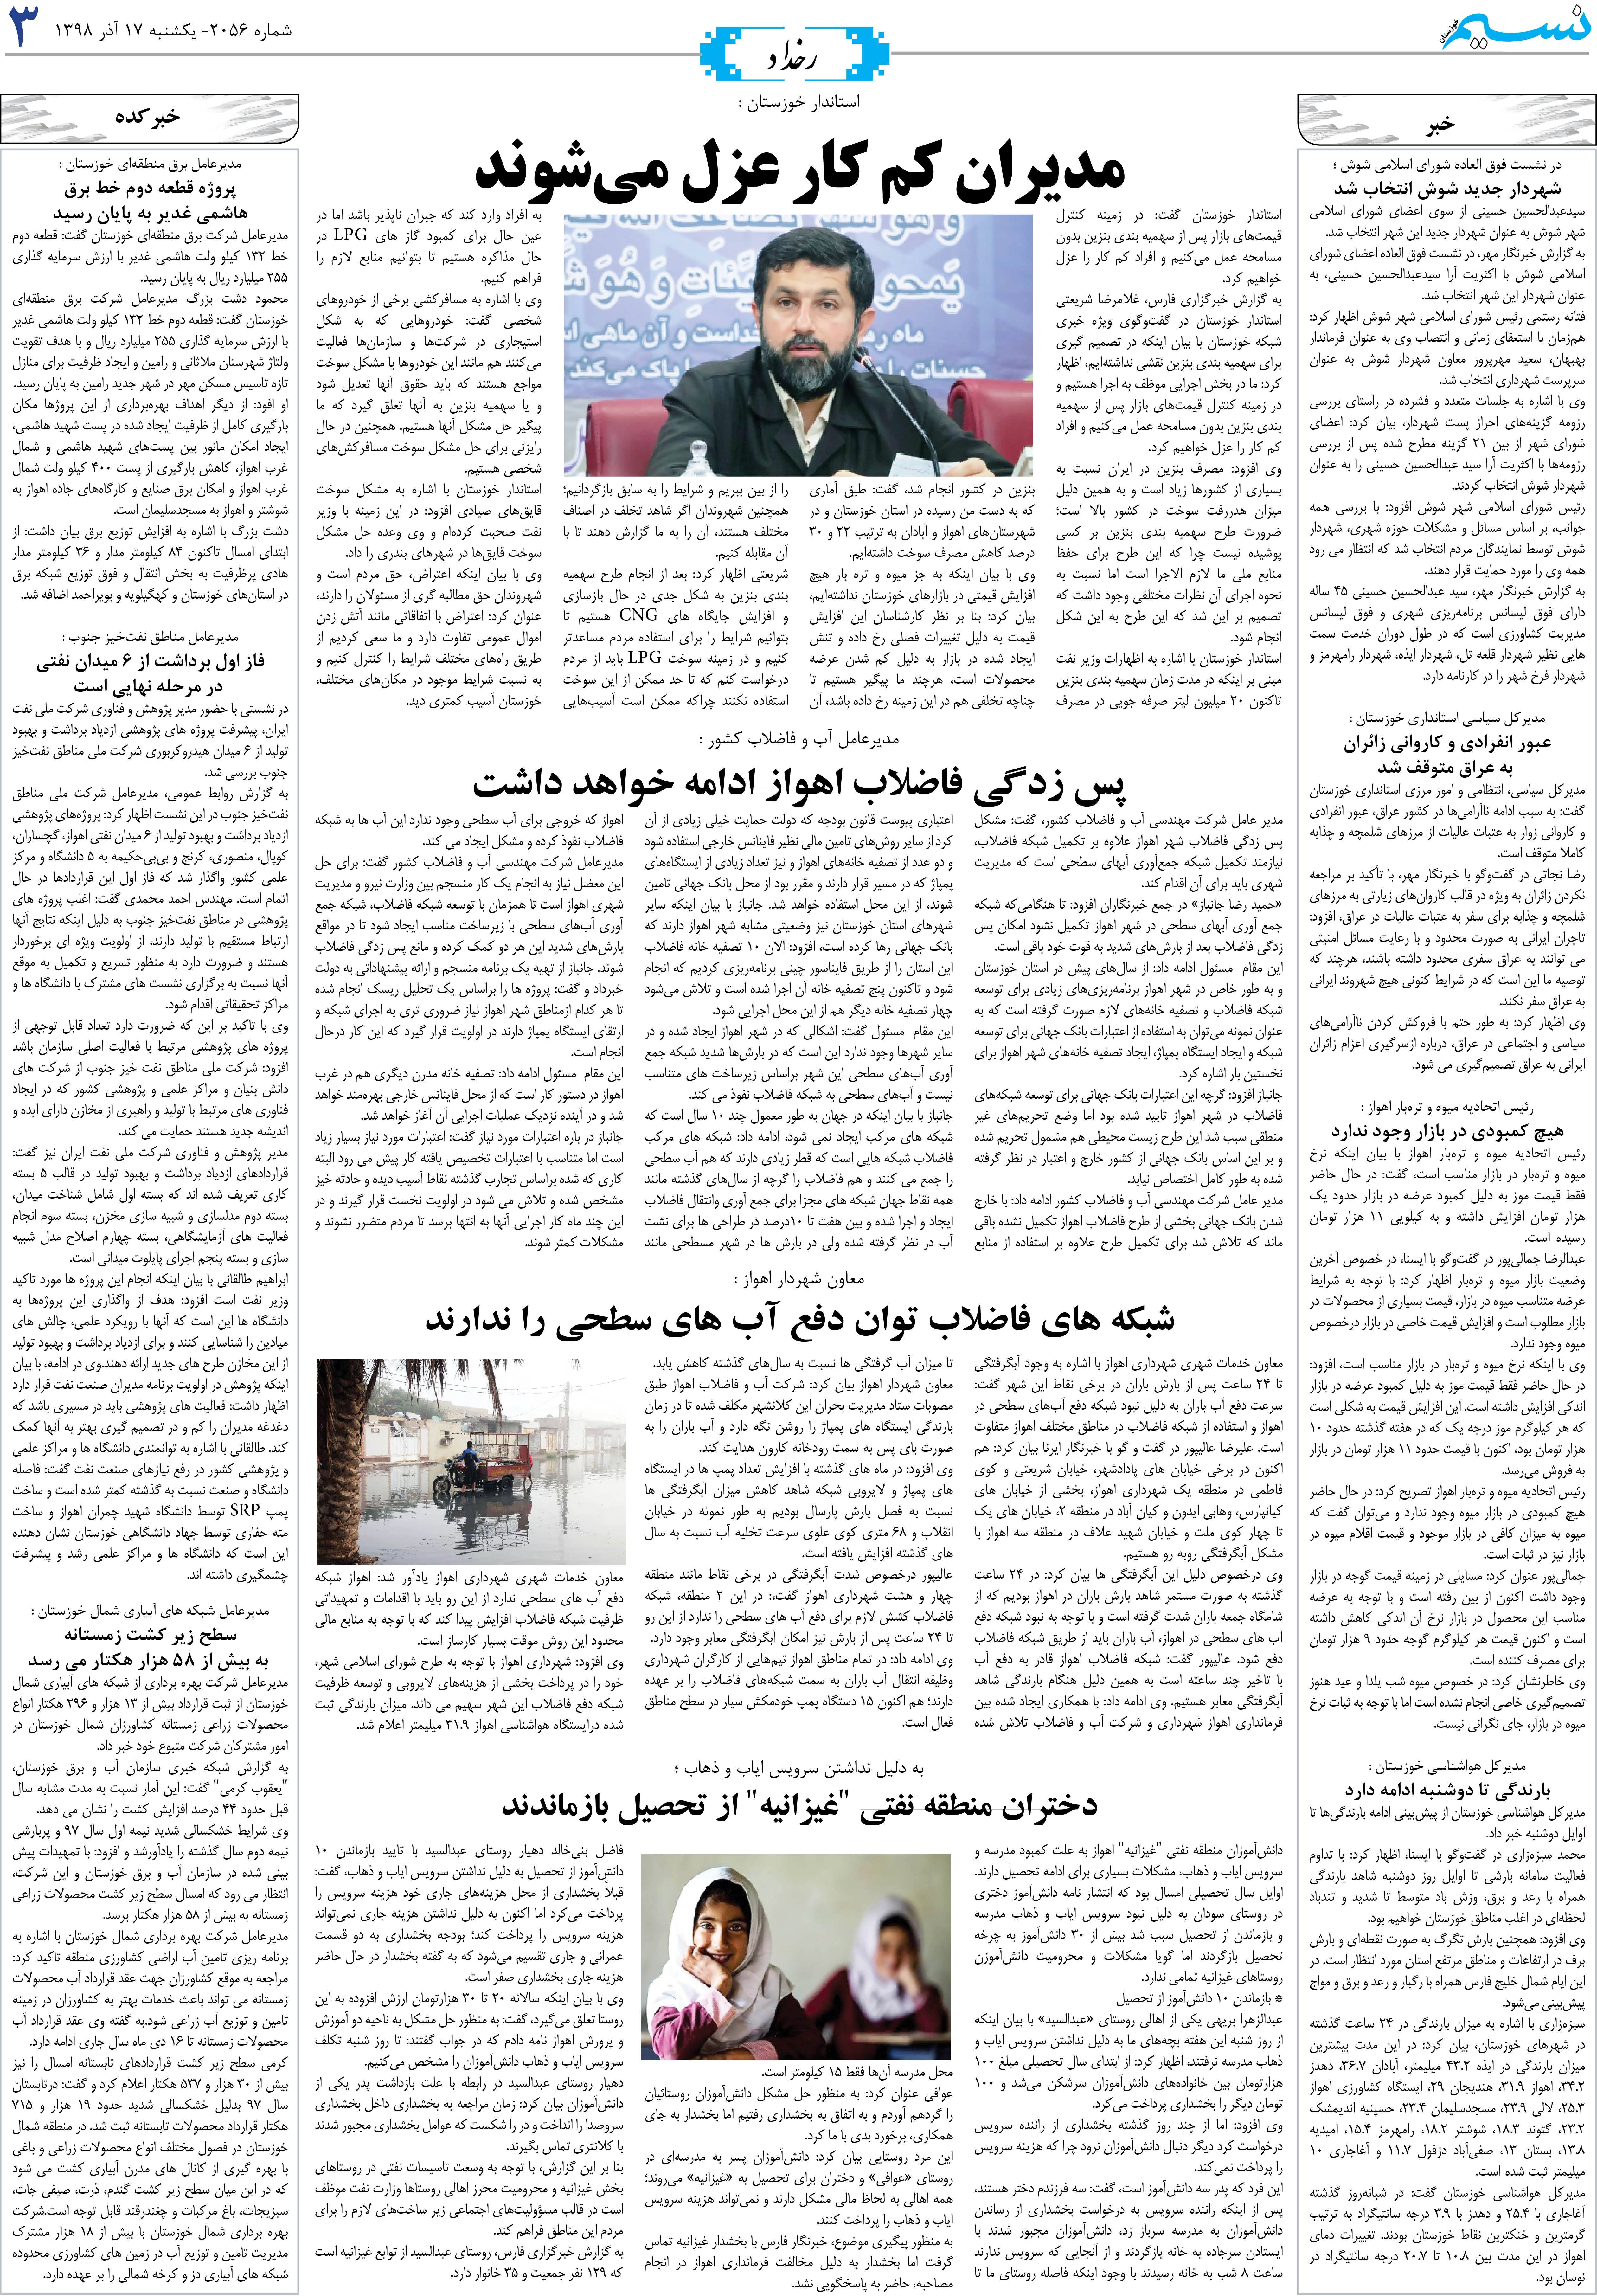 صفحه رخداد روزنامه نسیم شماره 2056